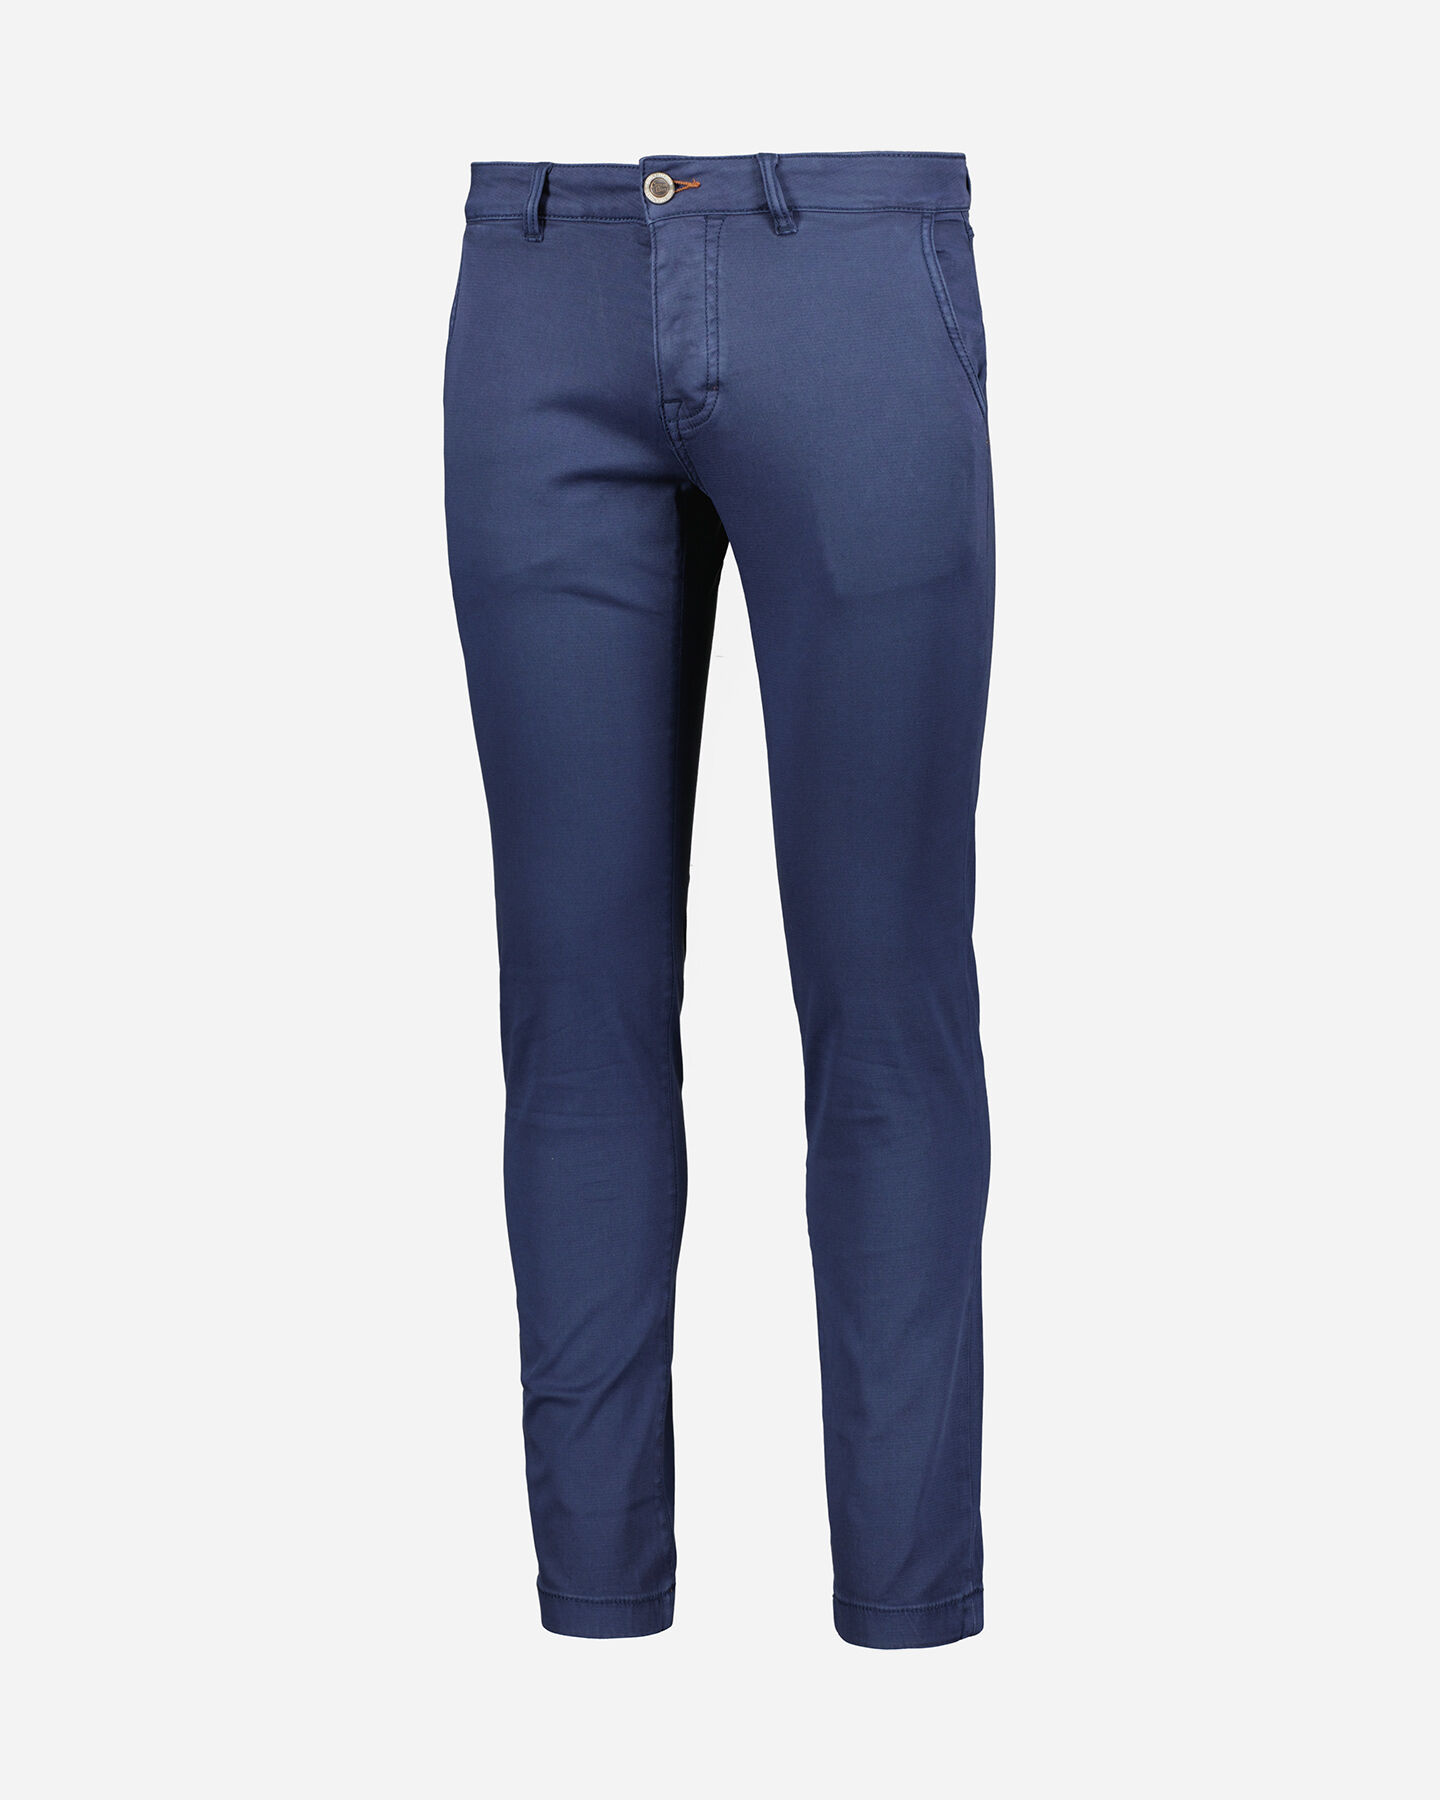  Pantalone COTTON BELT CHINO M S4115862|518|30 scatto 0